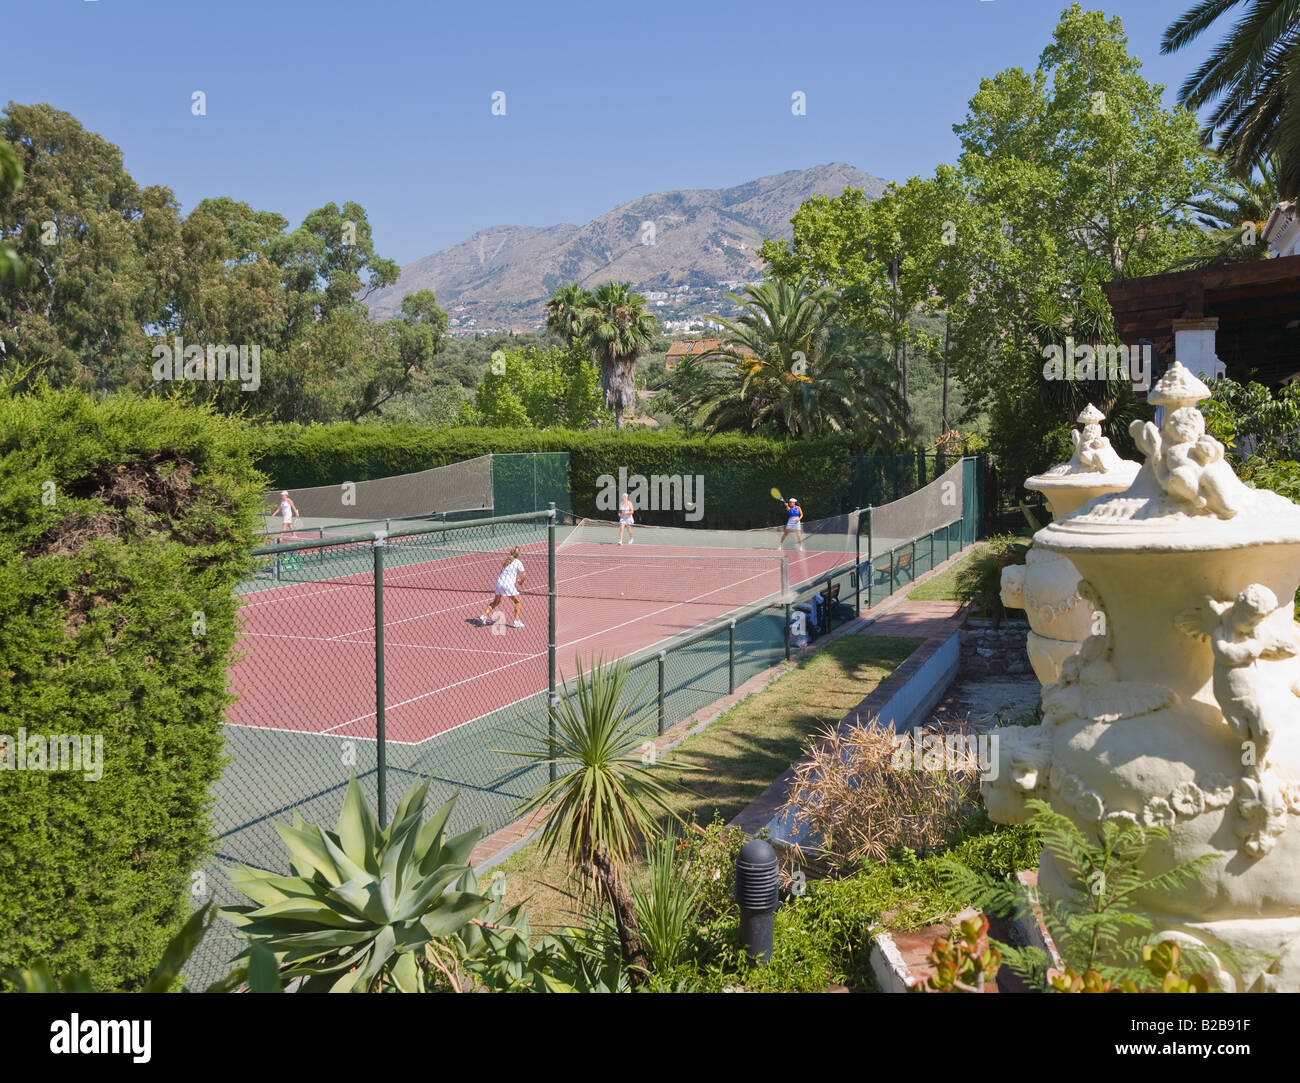 Mijas Málaga Provinz im Landesinneren Costa del Sol Spanien Lew Hoad s Tennis Ranch Campo de Tenis y Padel Stockfoto